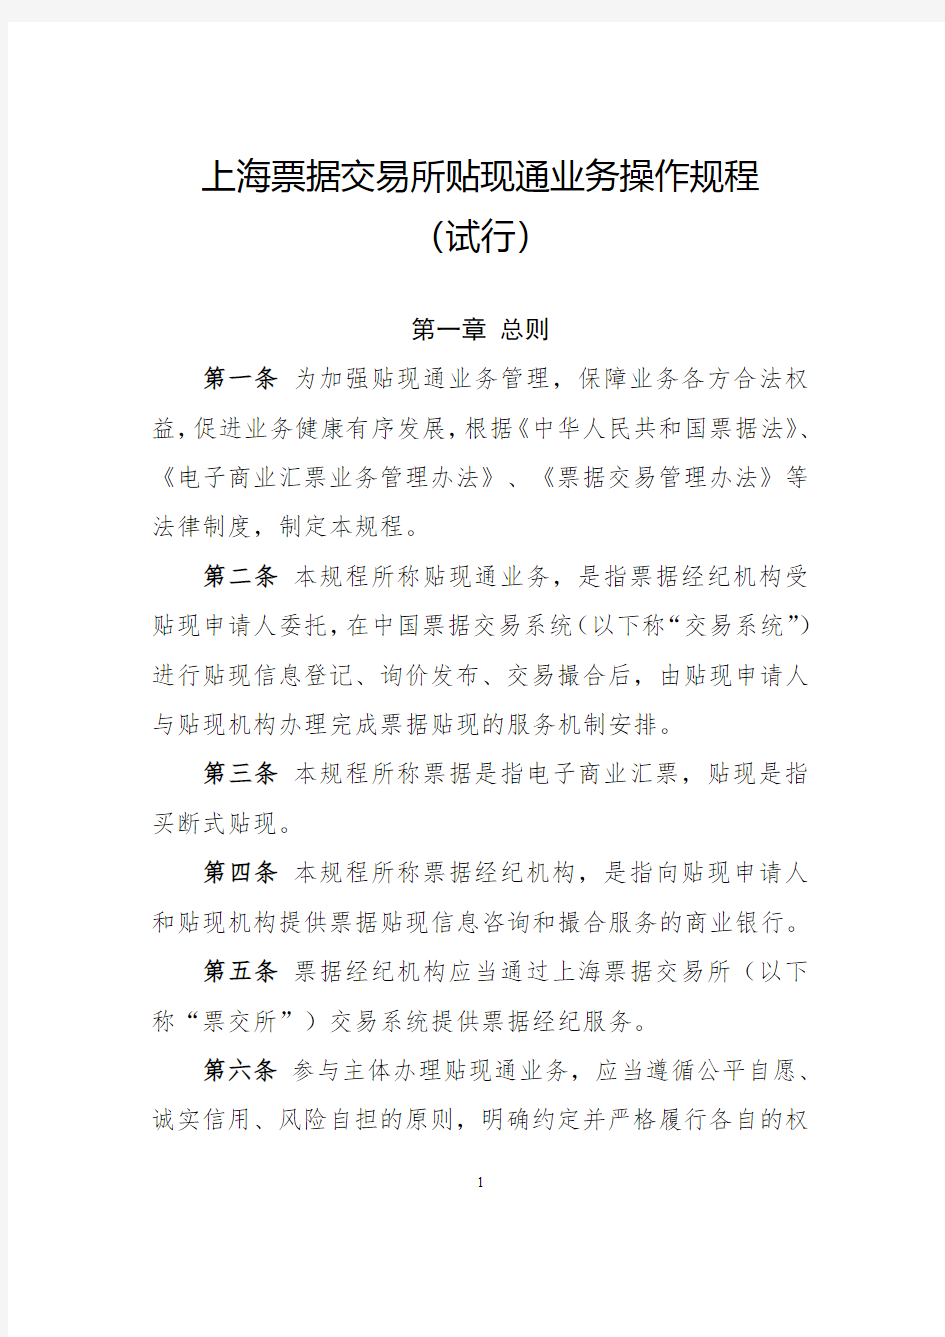 上海票据交易所贴现通业务操作规程(试行)